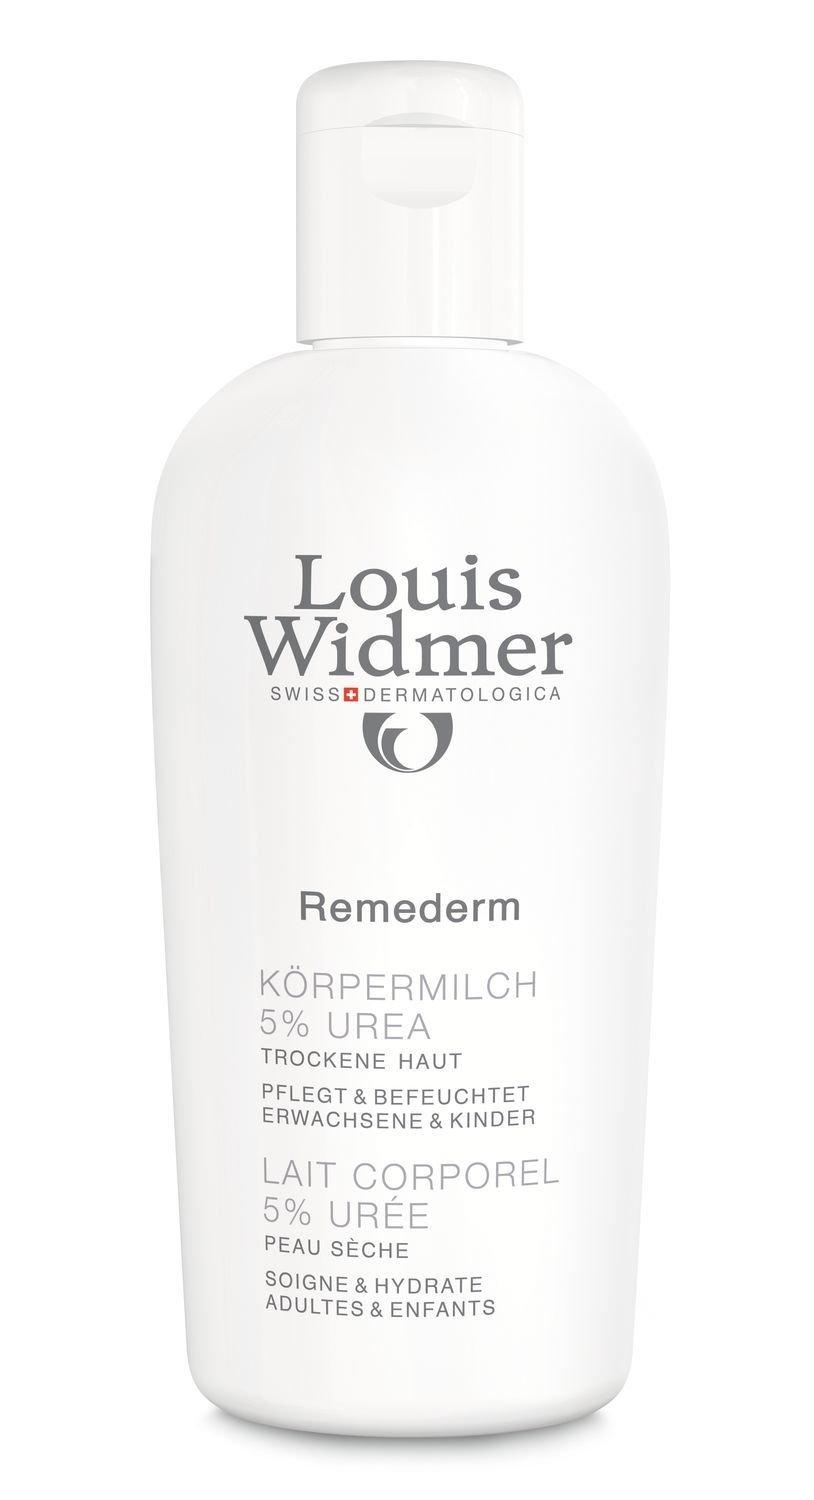 Louis Widmer Remederm K.milch 5% Ur.parf Remederm Körpermilch 5% Parfümiert 